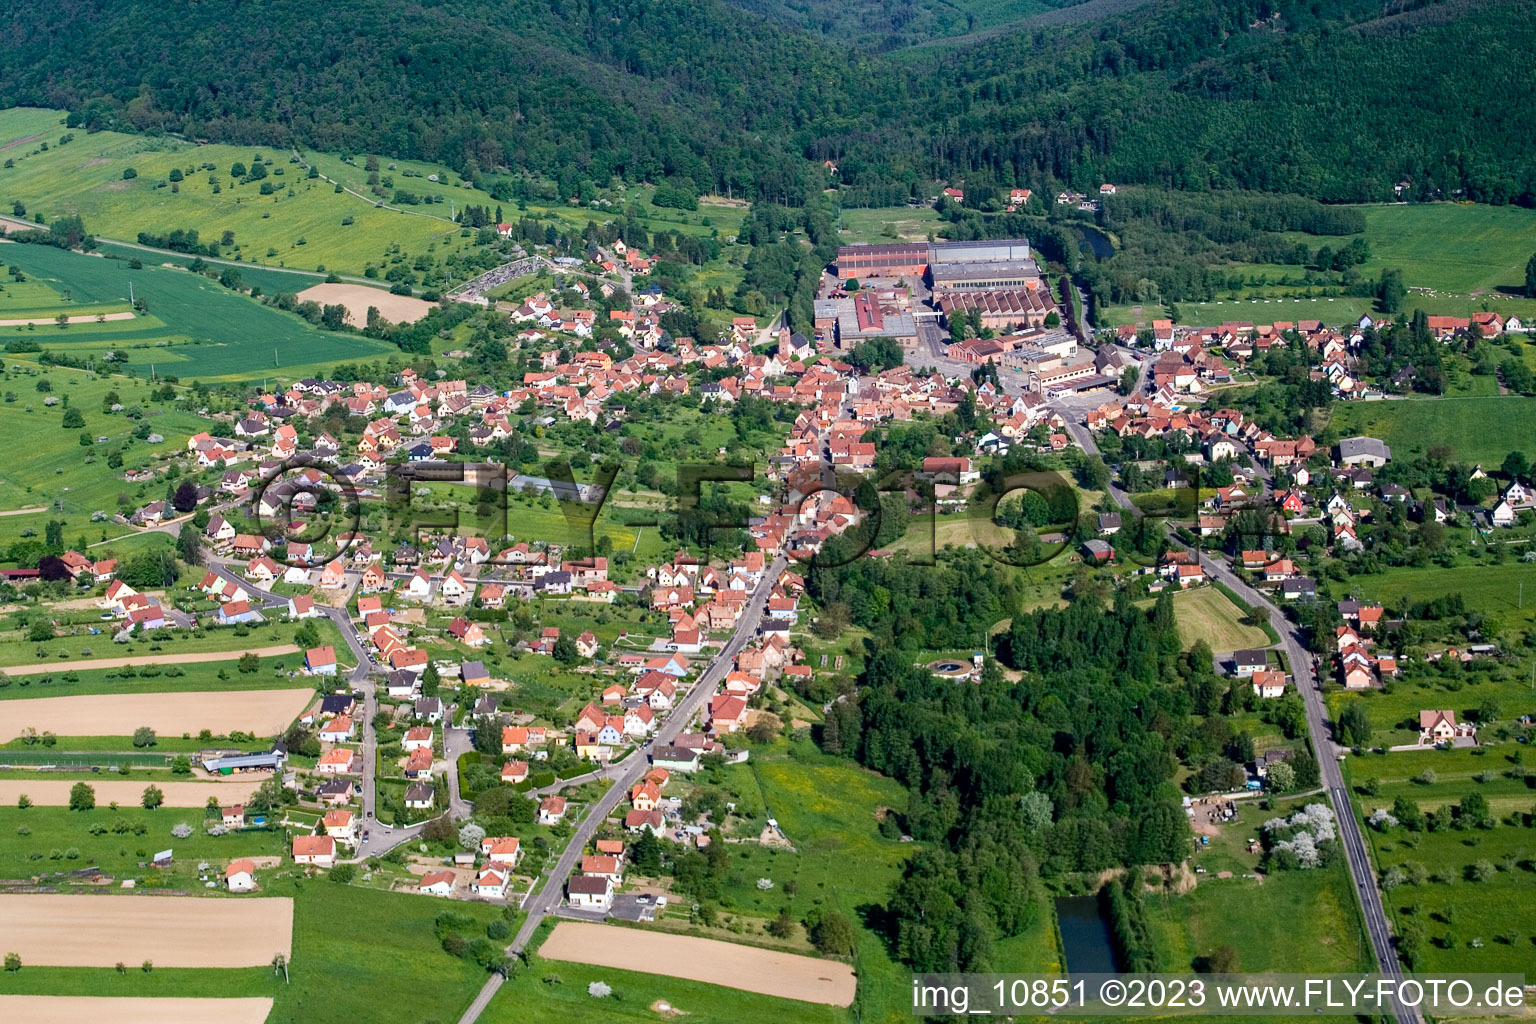 Zinswiller im Bundesland Bas-Rhin, Frankreich aus der Luft betrachtet